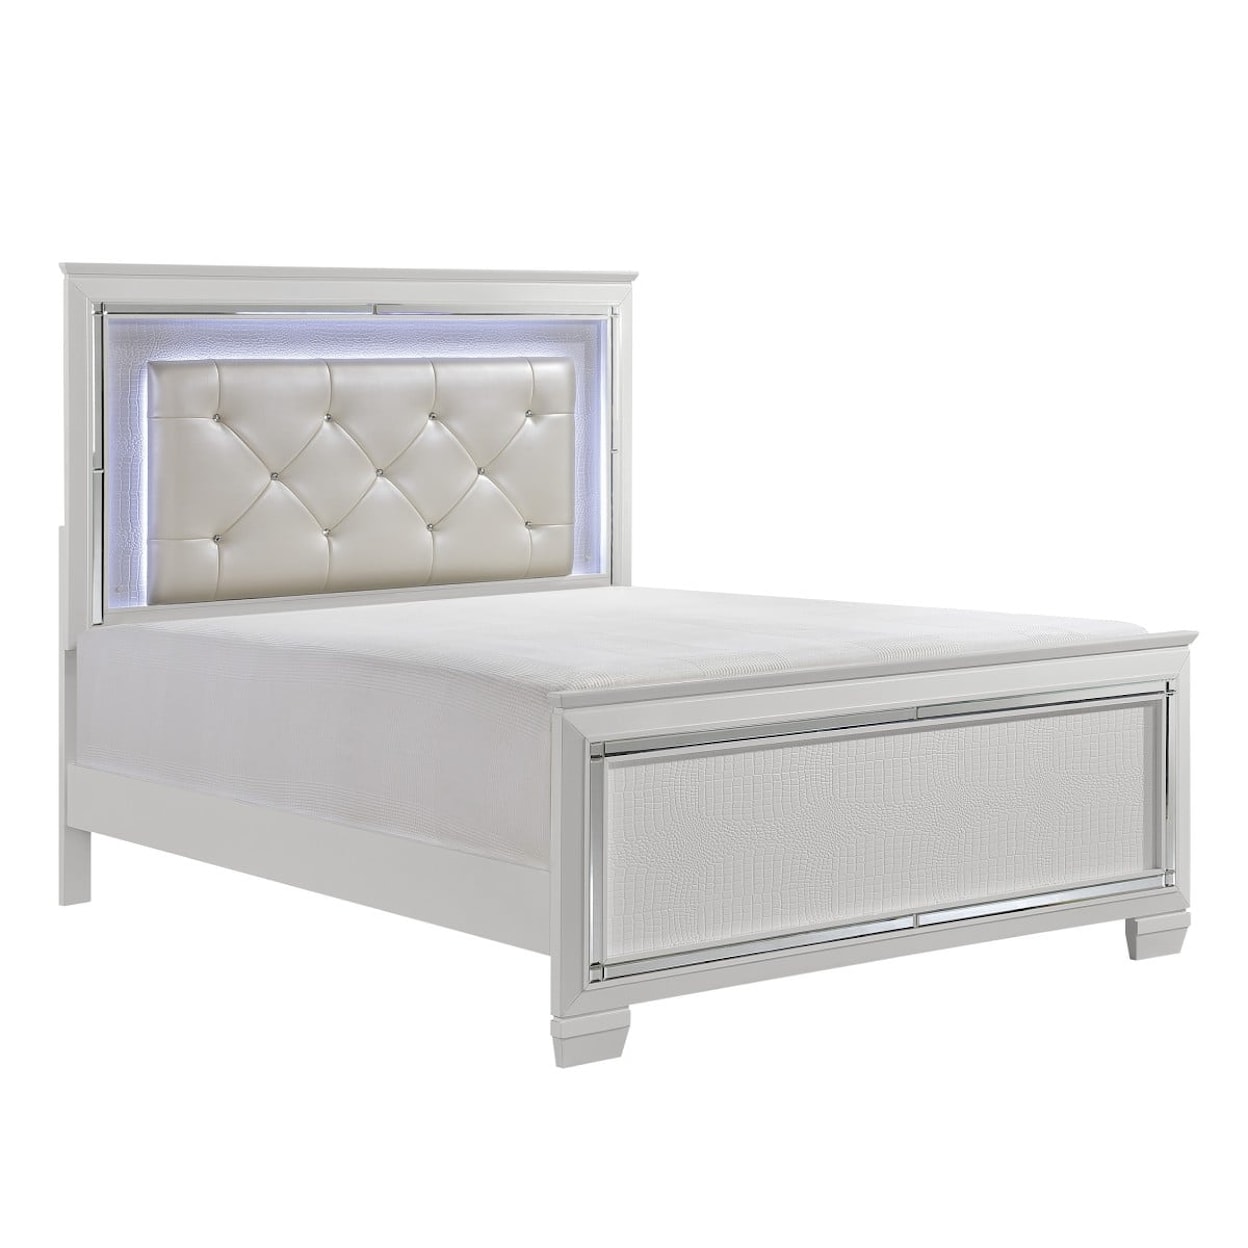 Homelegance Furniture Allura Full Bed with Led Lighting